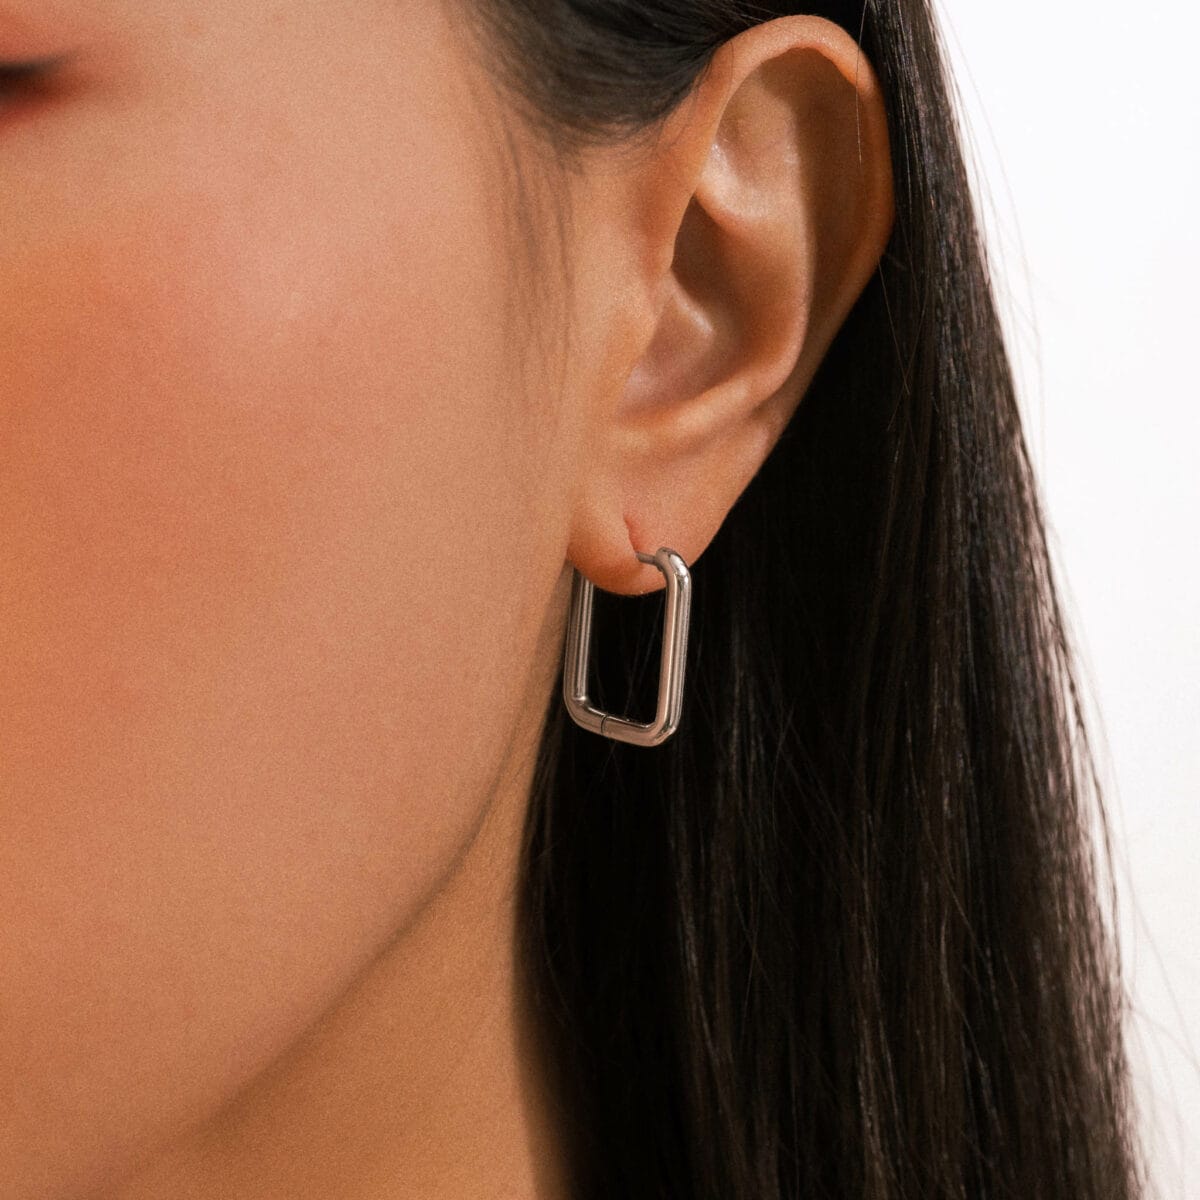 https://m.clubbella.co/product/silver-nova-earrings/ Silver Nova Earrings A01 (4)